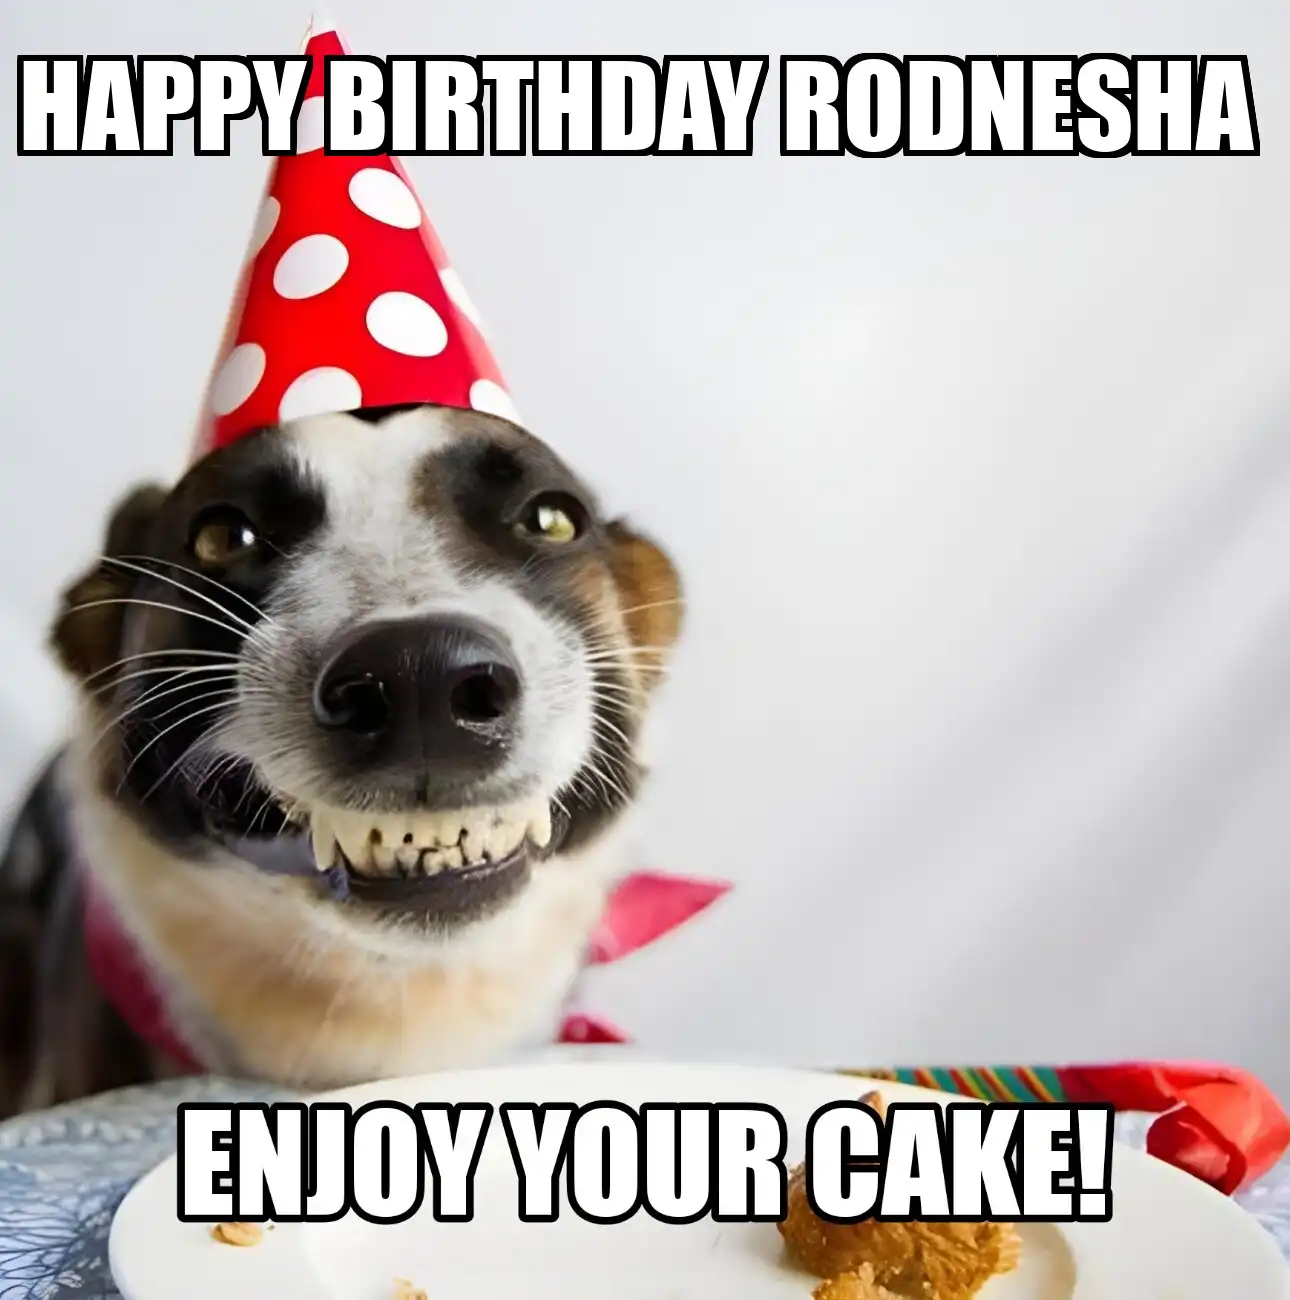 Happy Birthday Rodnesha Enjoy Your Cake Dog Meme